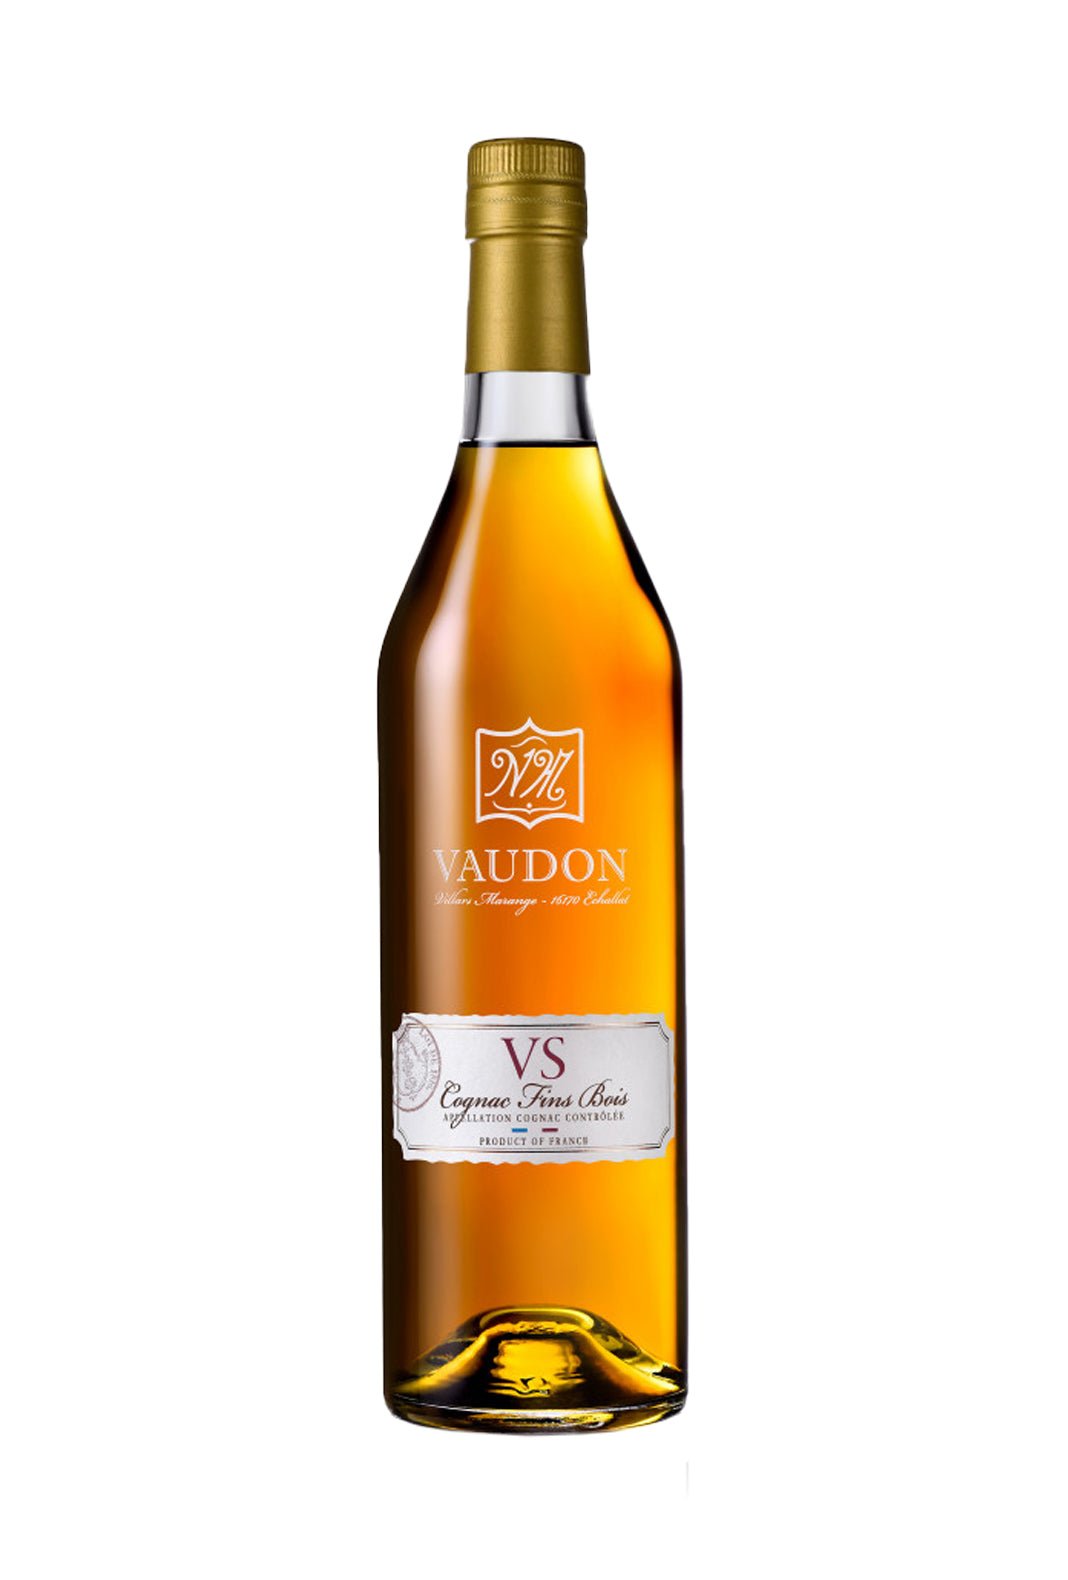 Francois Voyer VS Vaudou Fin Bois 40% 700ml | Cognac | Shop online at Spirits of France